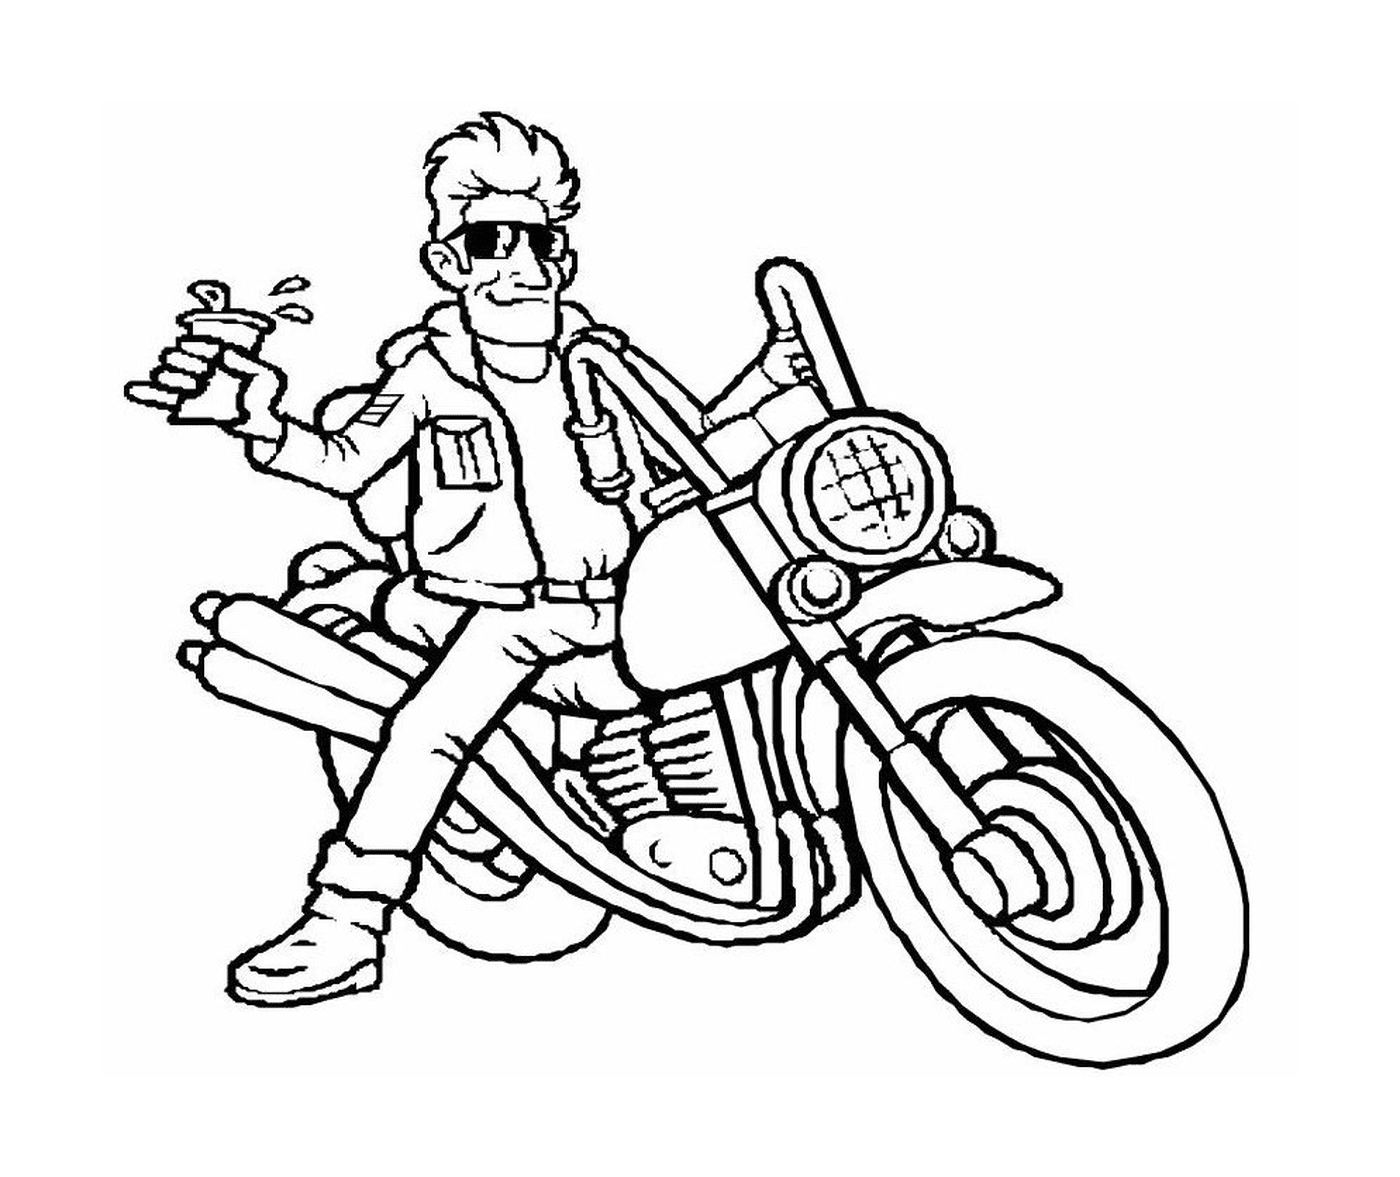   Homme assis à l'arrière d'une moto 